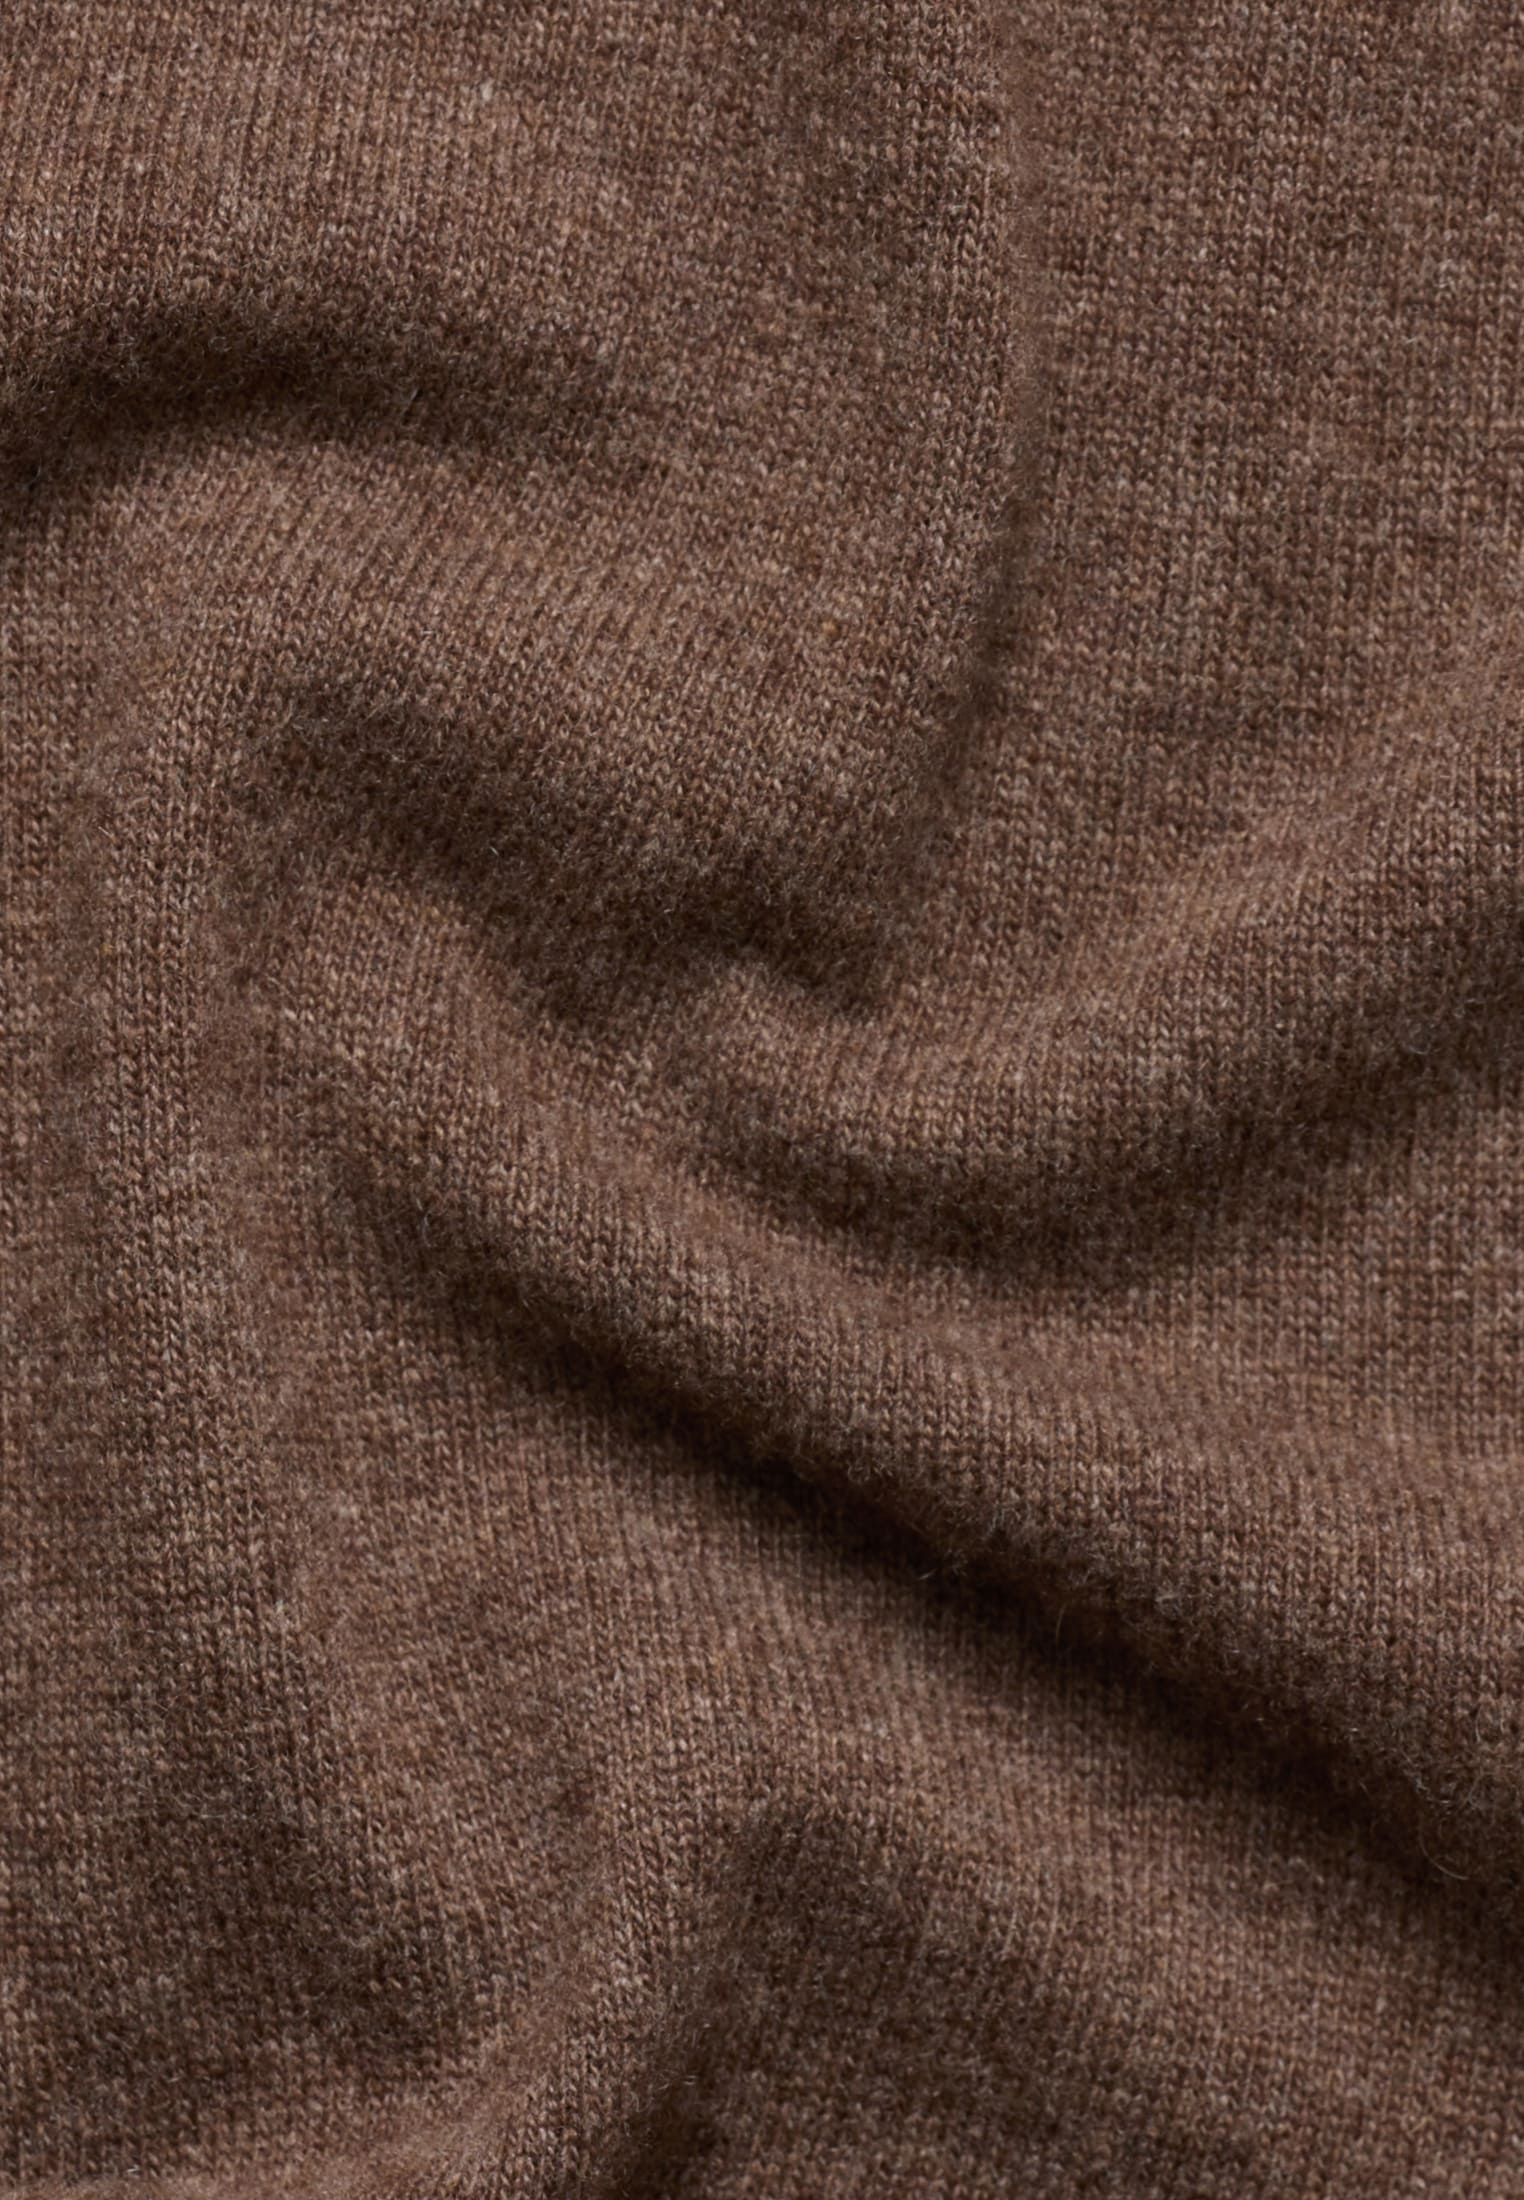 2XL Knitted brown plain | in cardigan dark | | brown 2KN00093-02-92-2XL dark